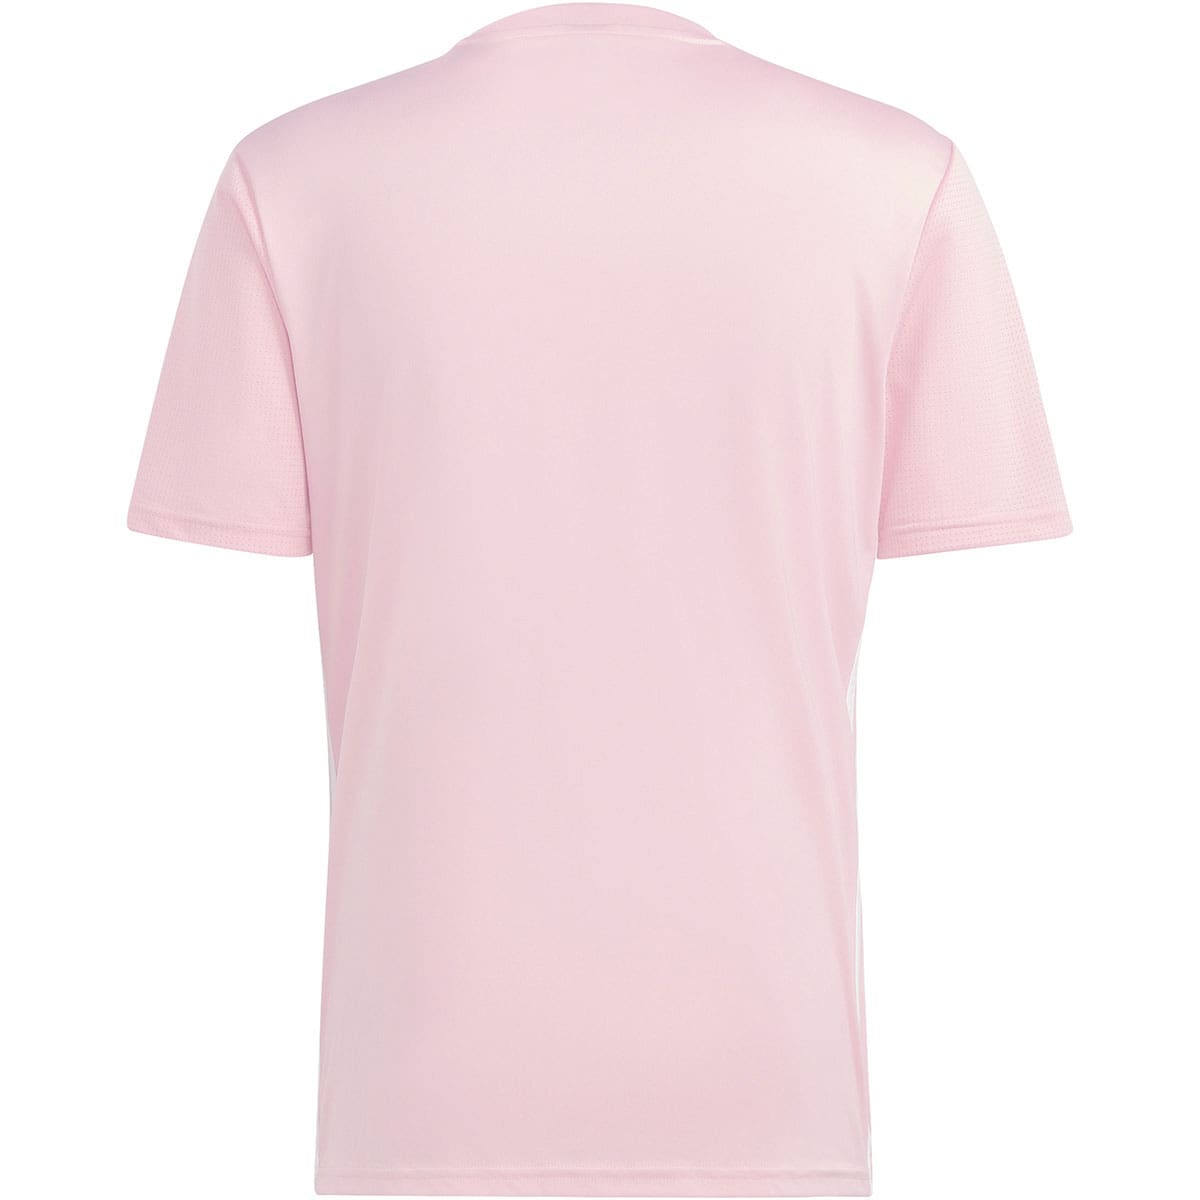 Adidas Herren Trikot Tabela 23 rosa-weiß